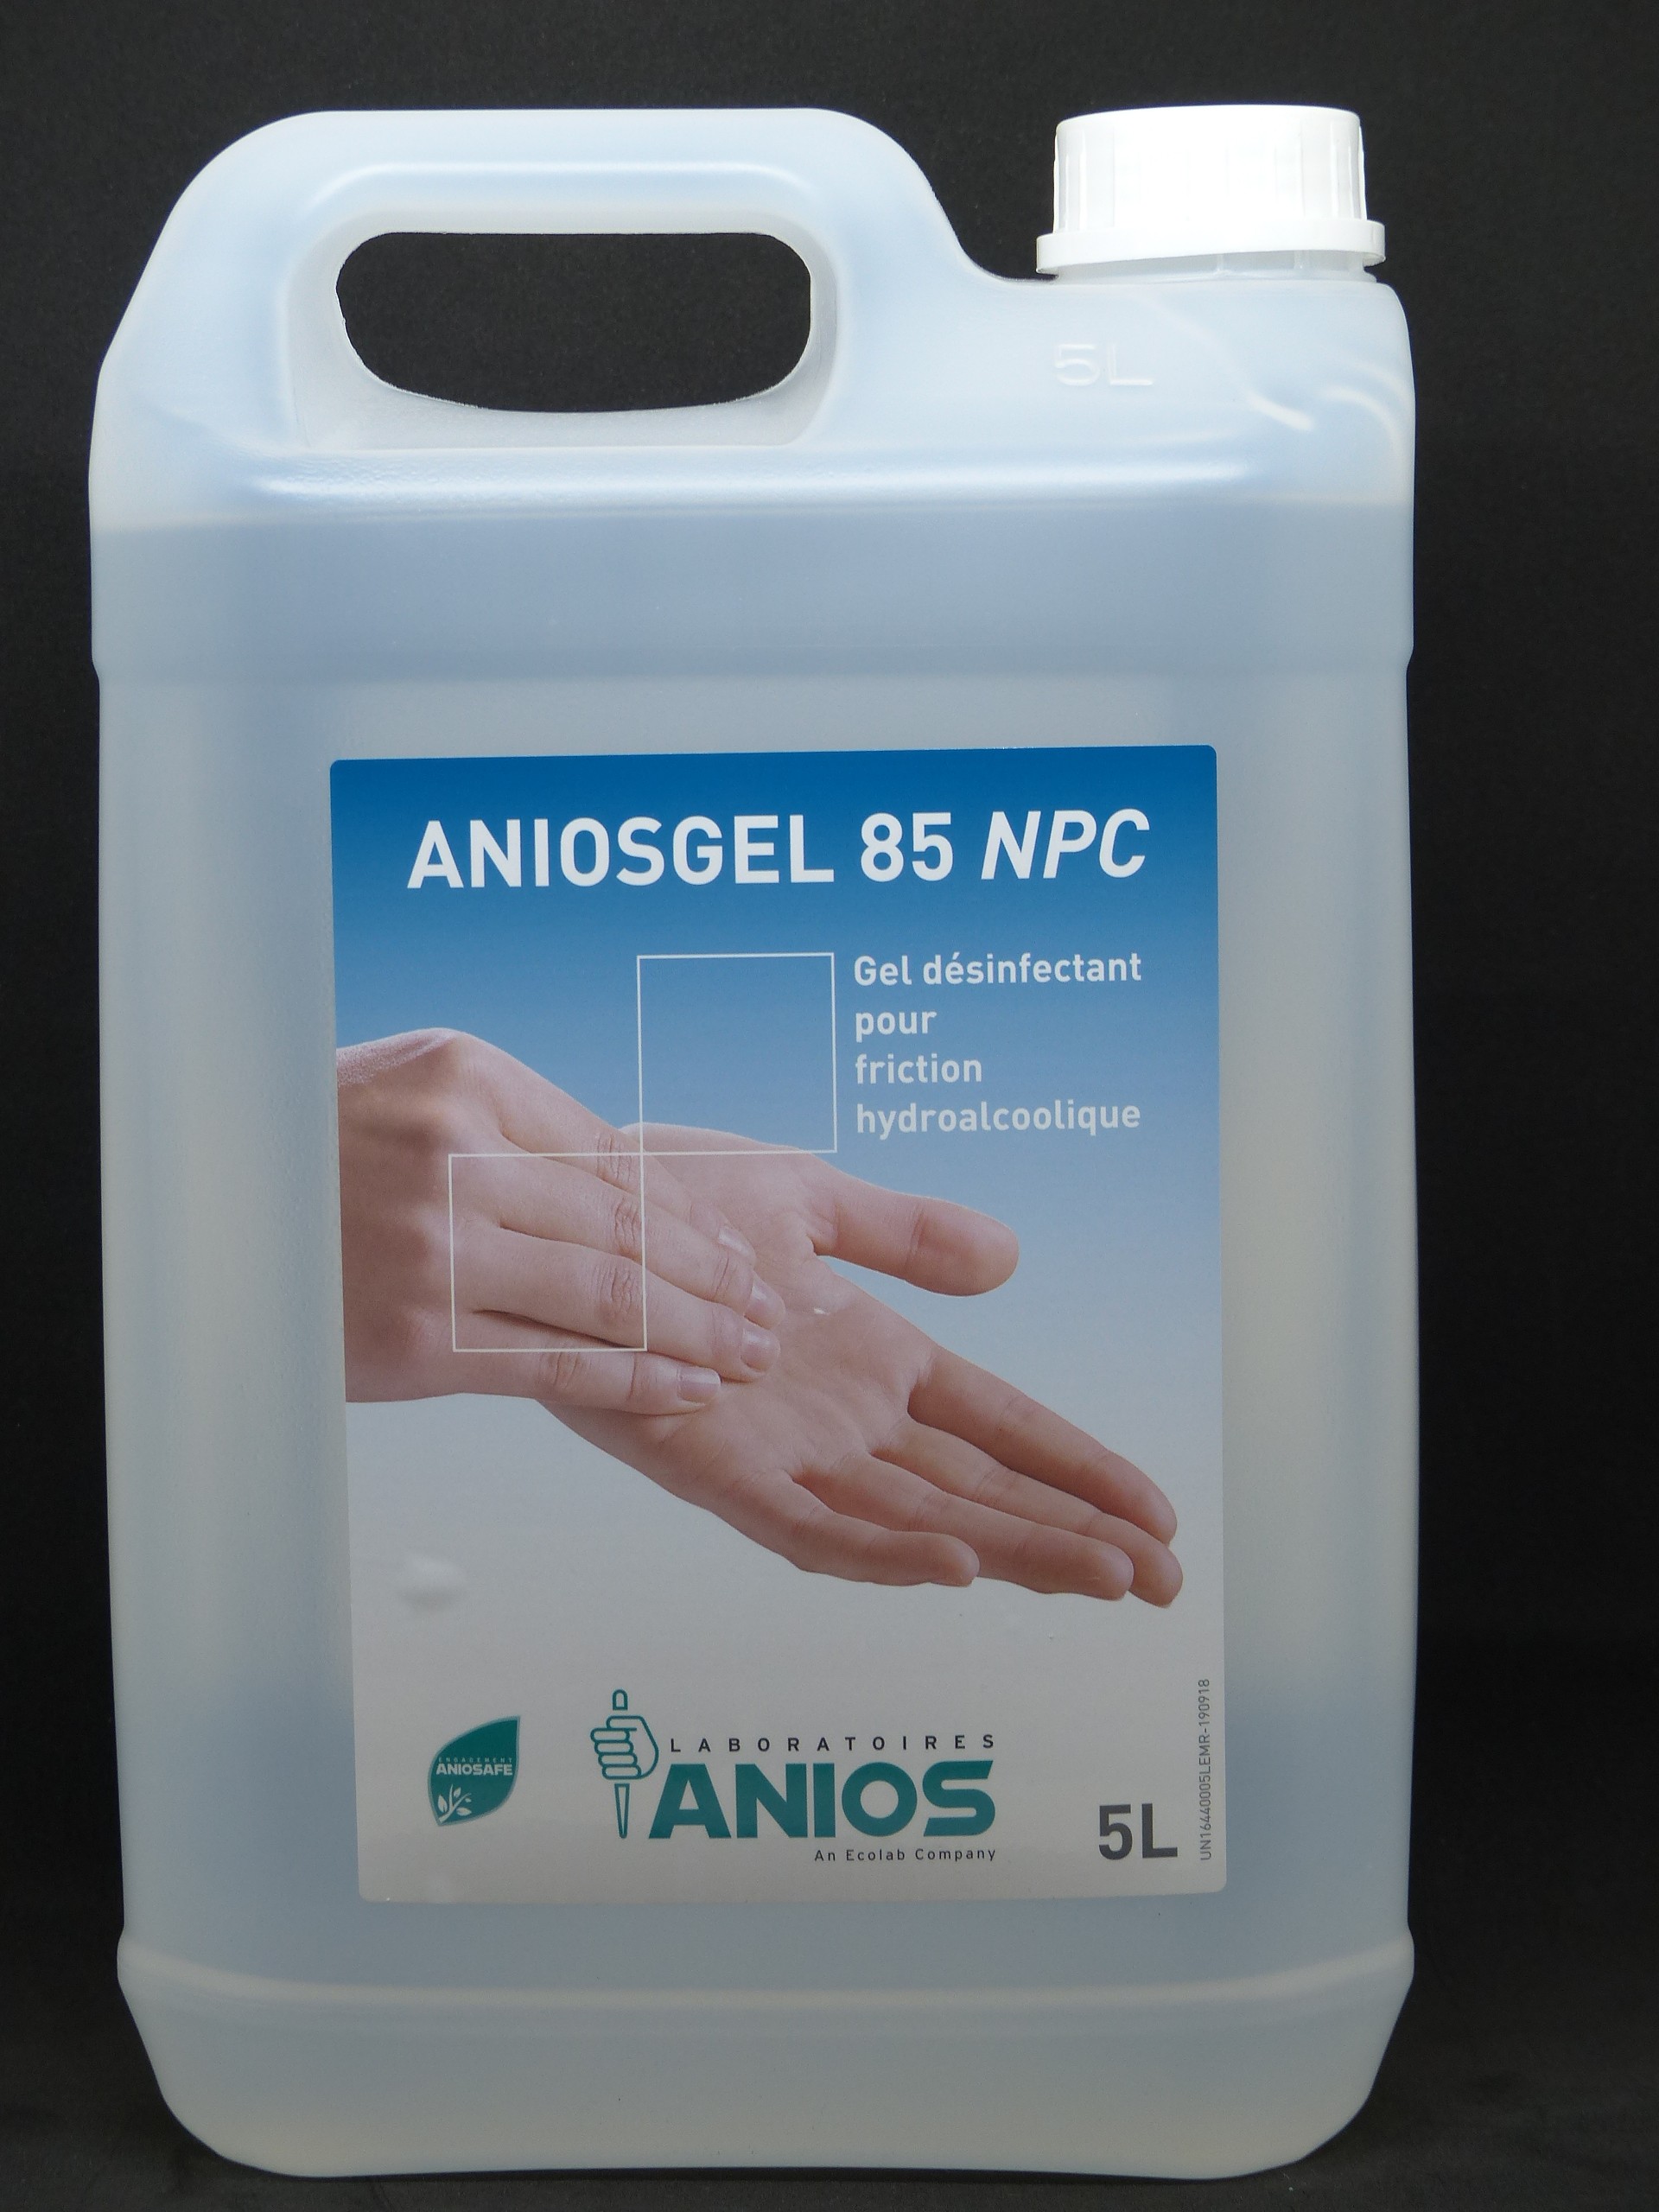 Aniosgel 85 NPC, le gel hydroalcoolique des professionnels de la santé